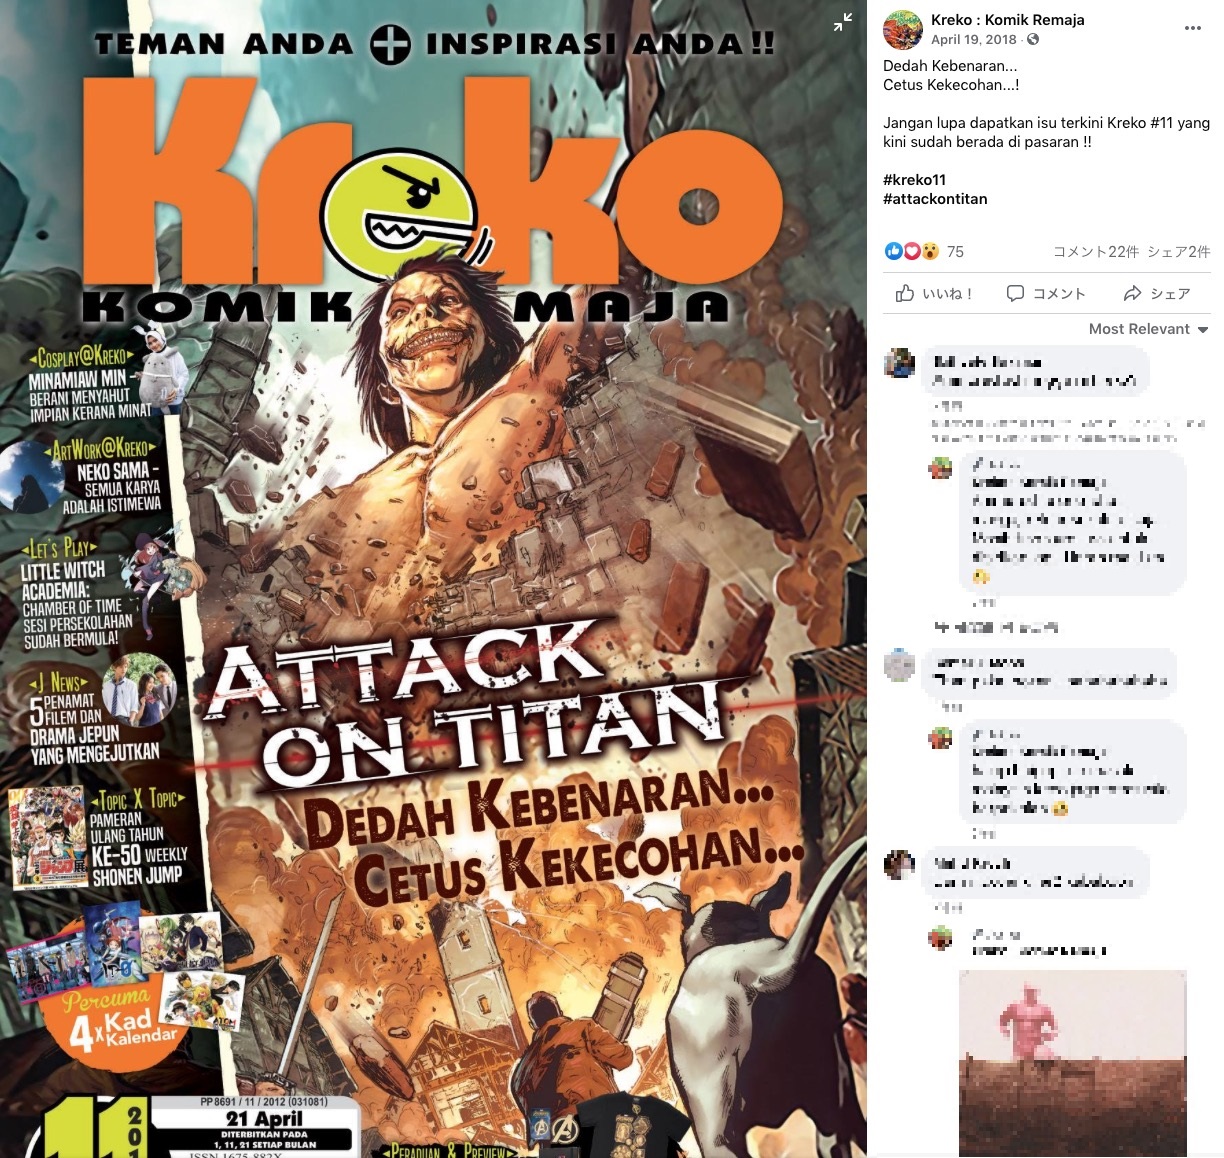 『進撃の巨人』が掲載されたマレーシアのコミック（画像は『Kreko : Komik Remaja　2018年4月20日付Facebook「Dedah Kebenaran...Cetus Kekecohan...!」』のスクリーンショット）